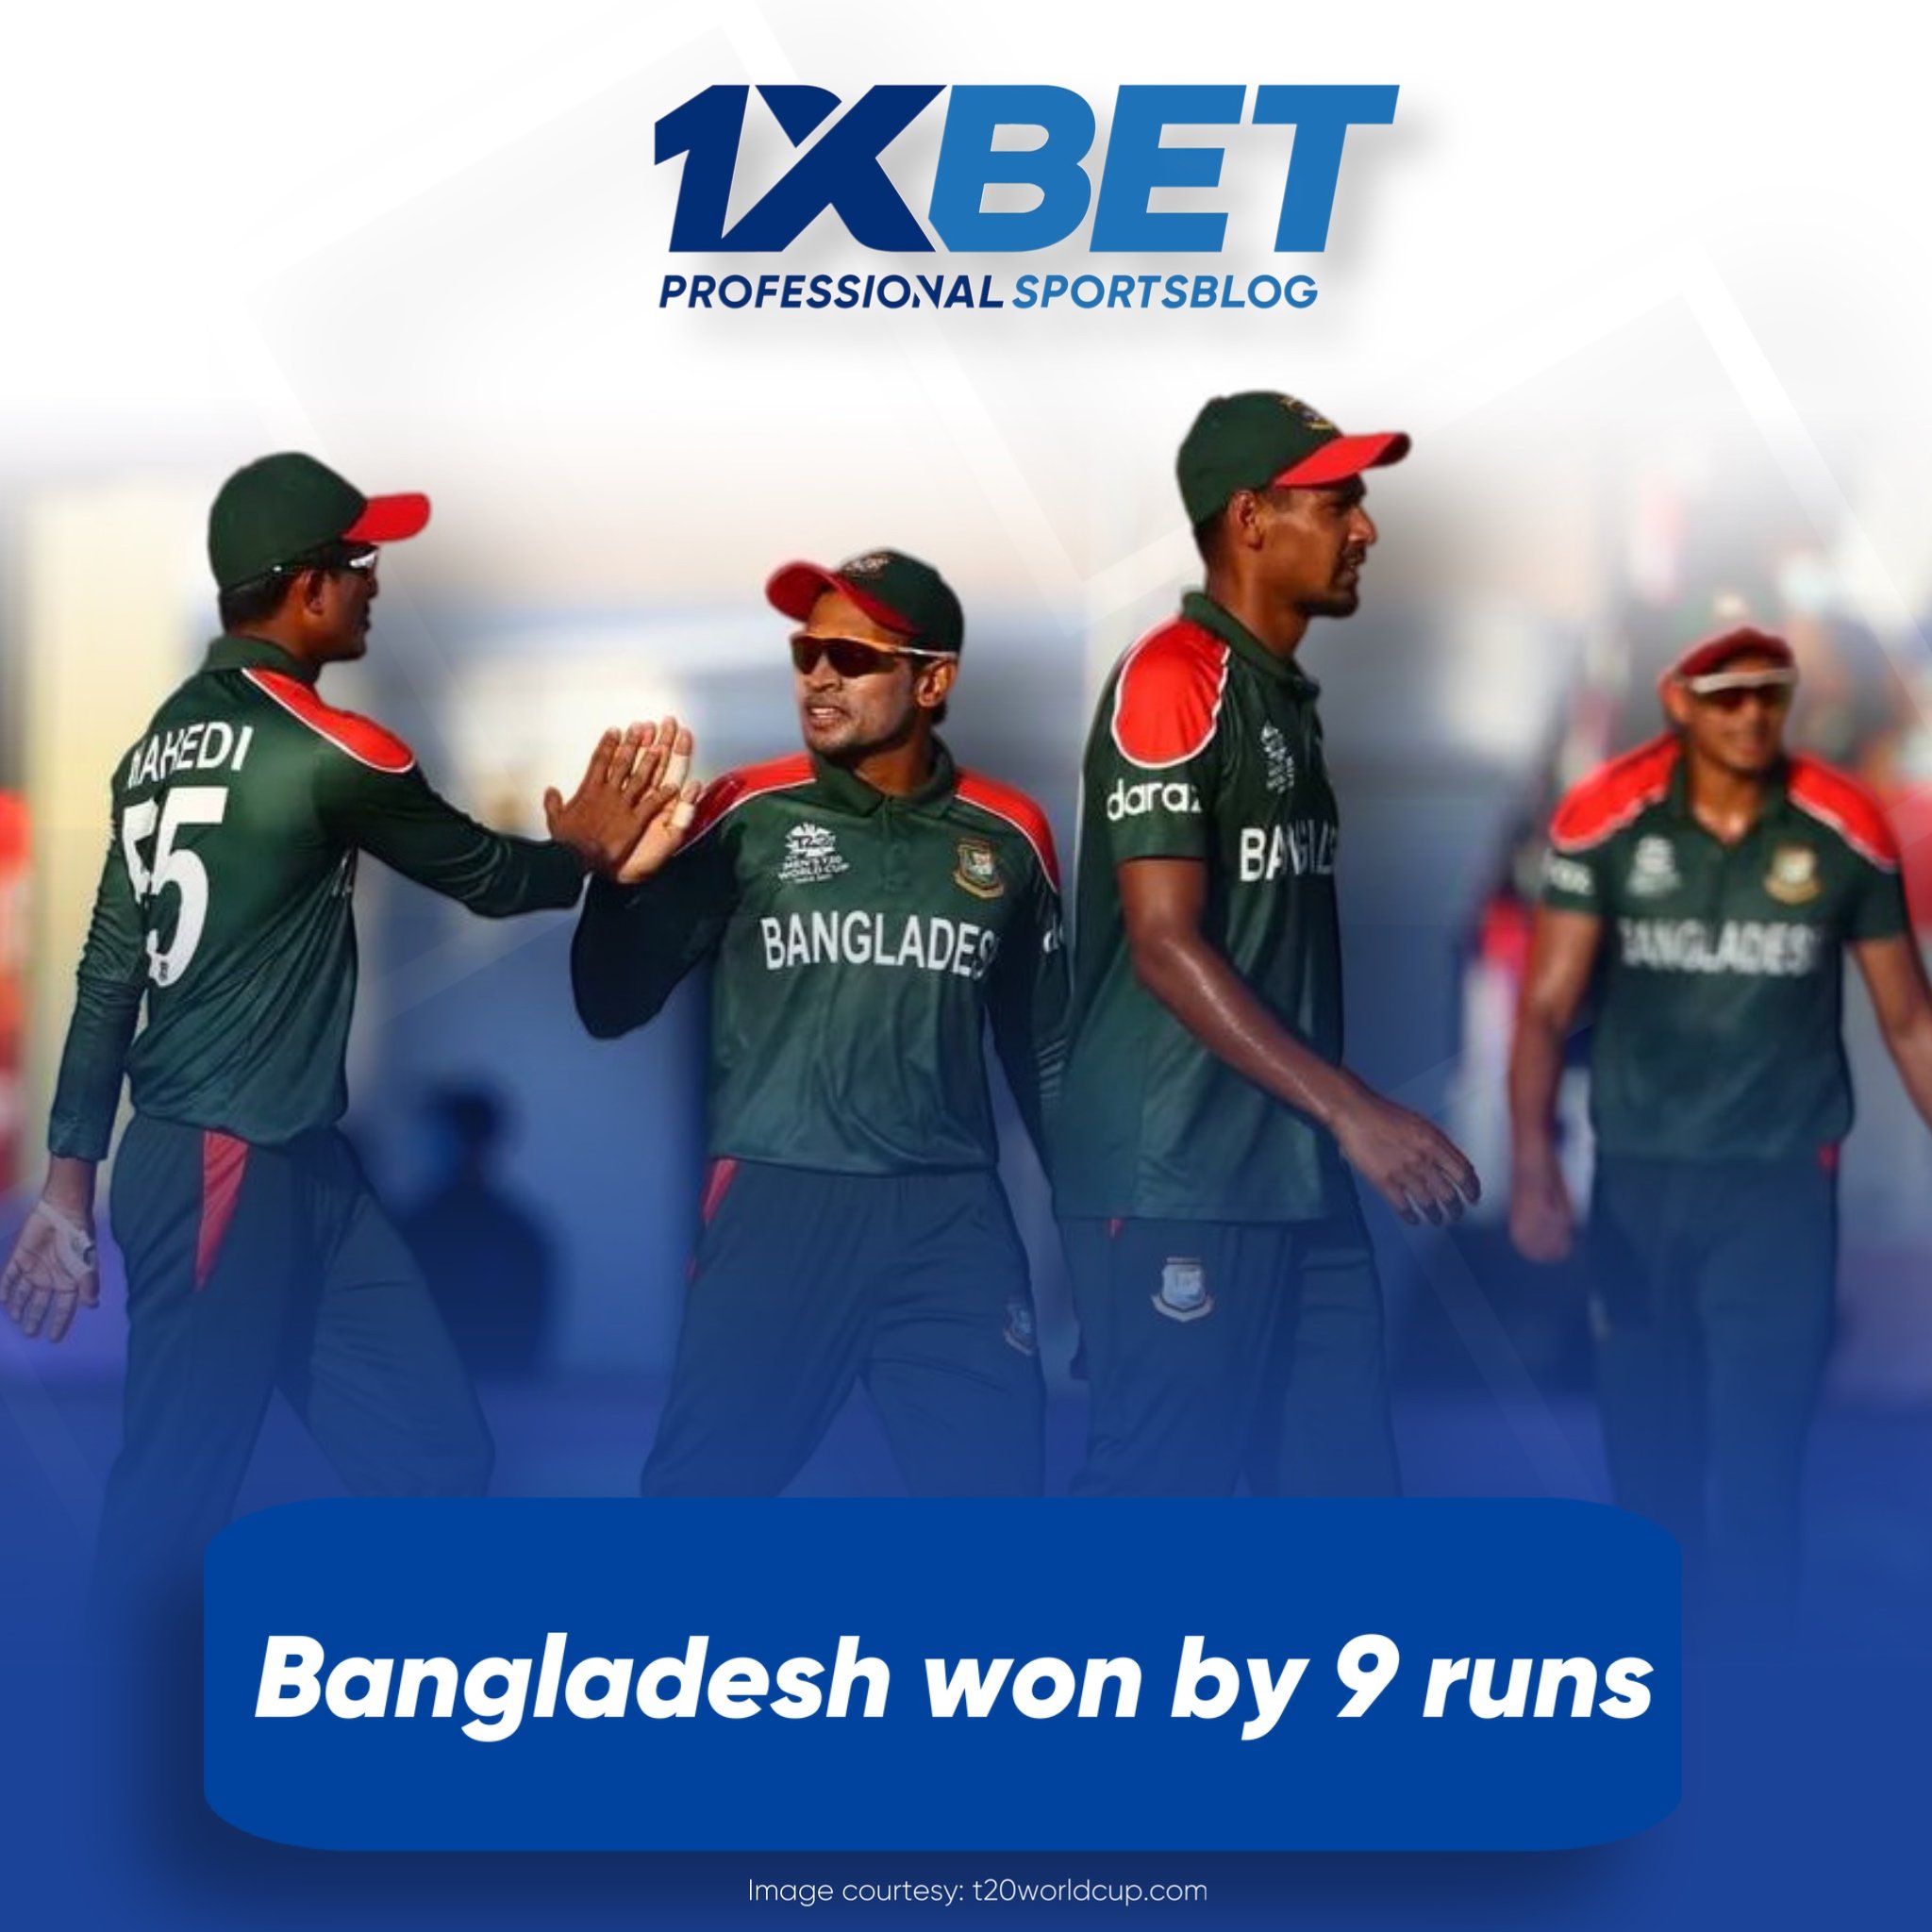 Bangladesh won by 9 runs